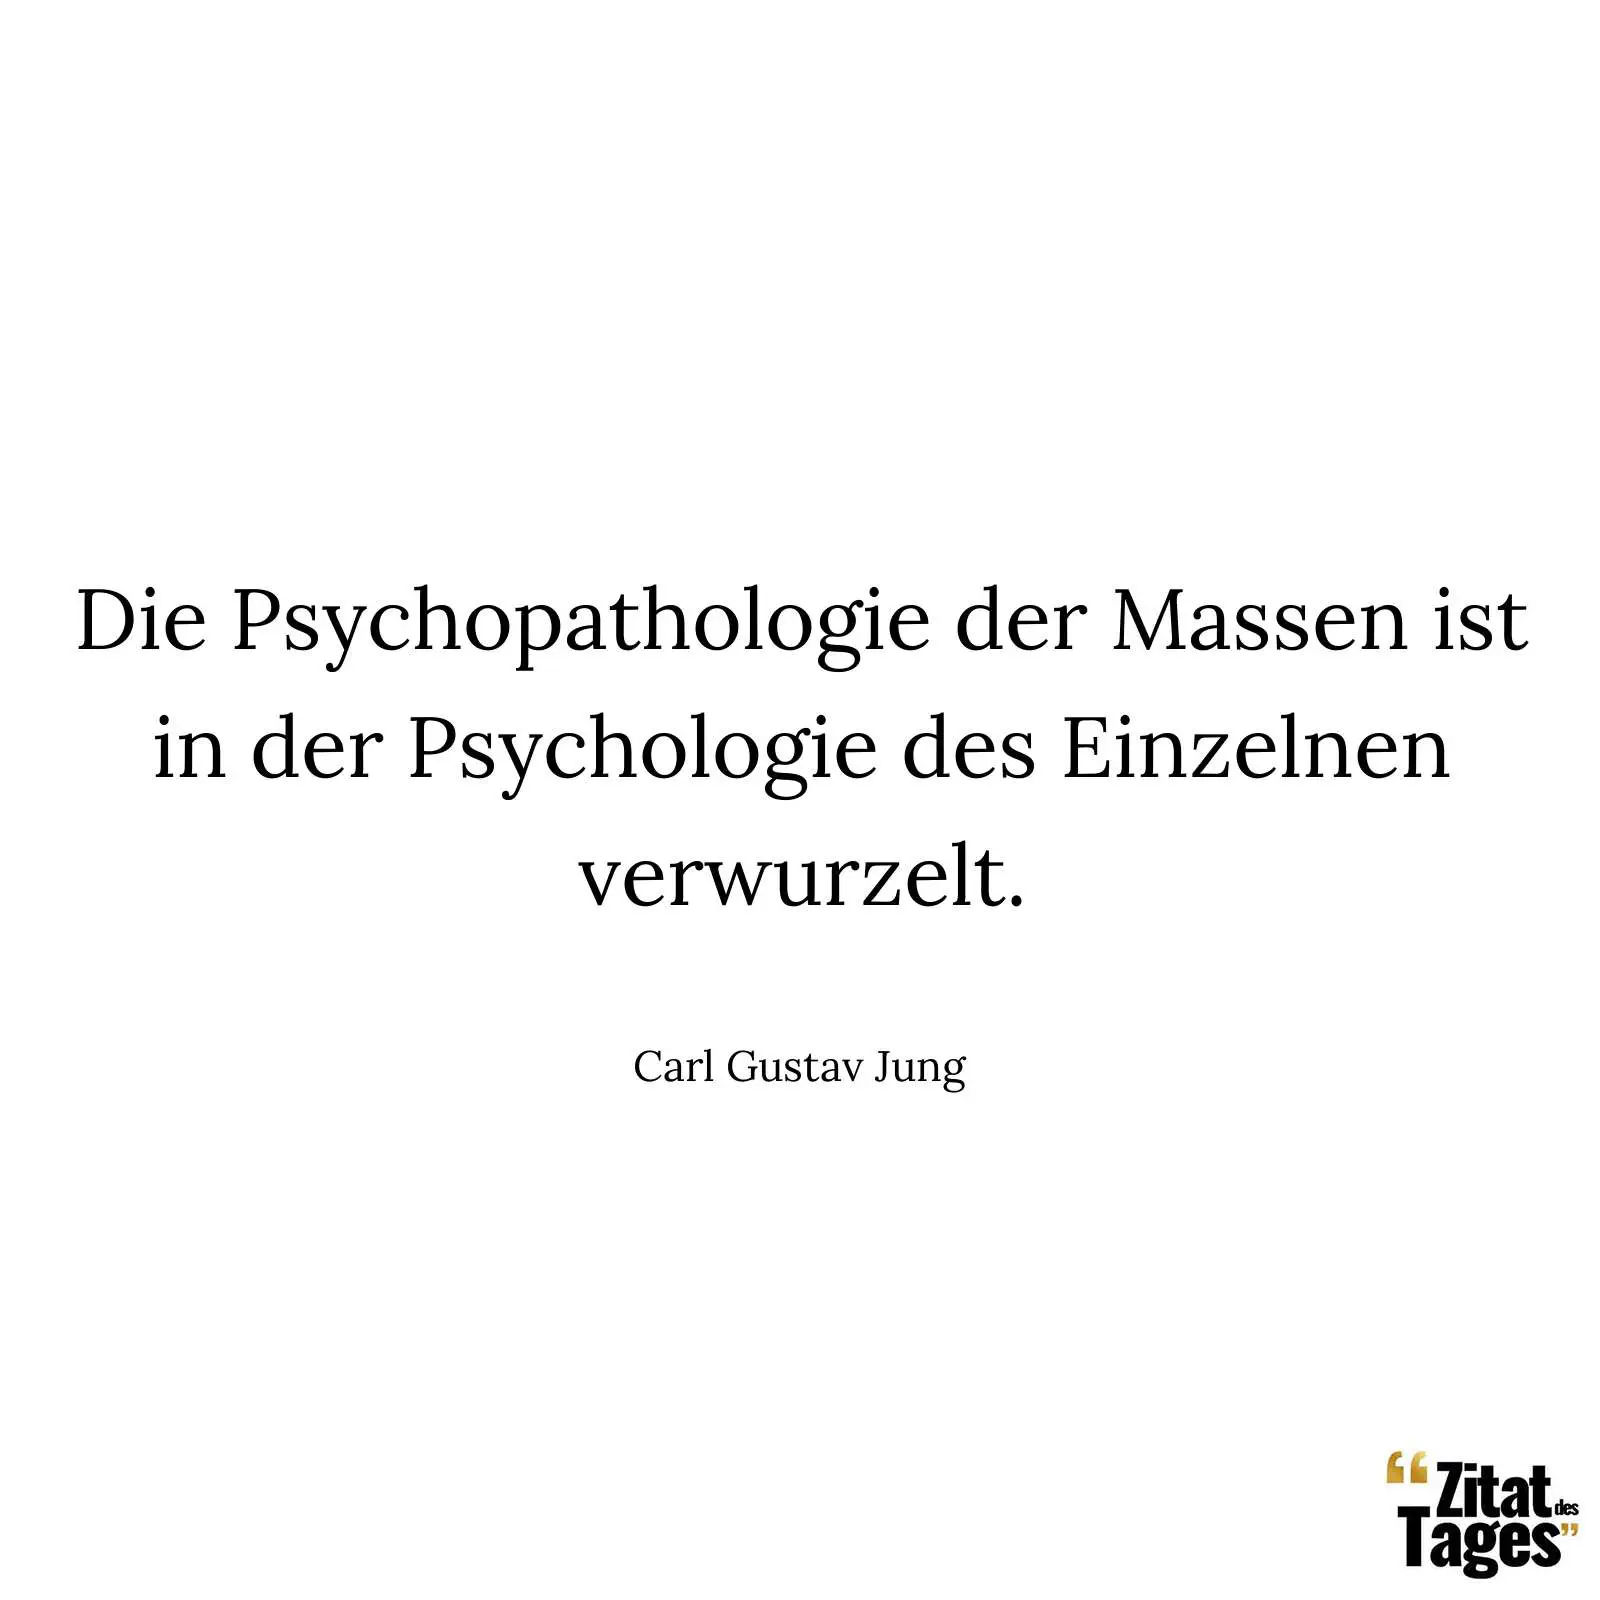 Die Psychopathologie der Massen ist in der Psychologie des Einzelnen verwurzelt. - Carl Gustav Jung